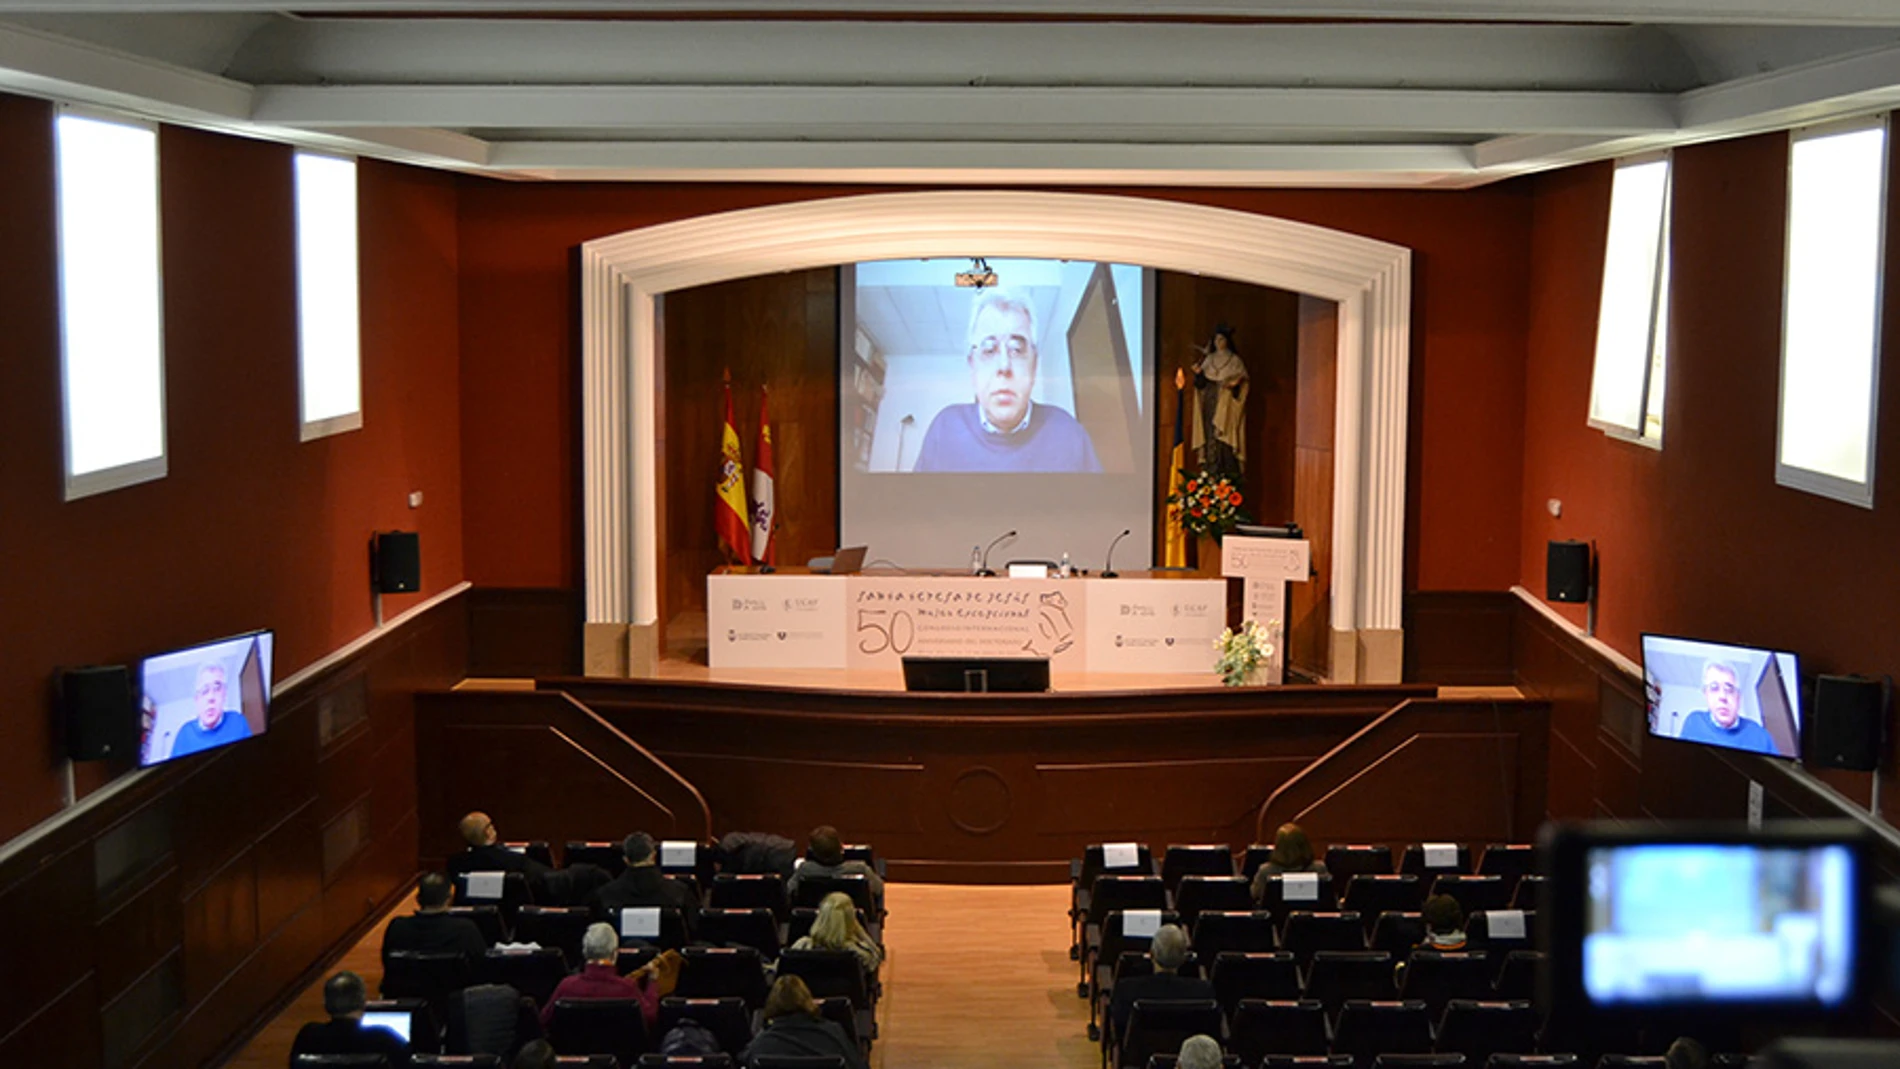 El doctor Silvano Giordano durante su conferencia en el Congreso Internacional sobre la figura de Santa Teresa de Jesús